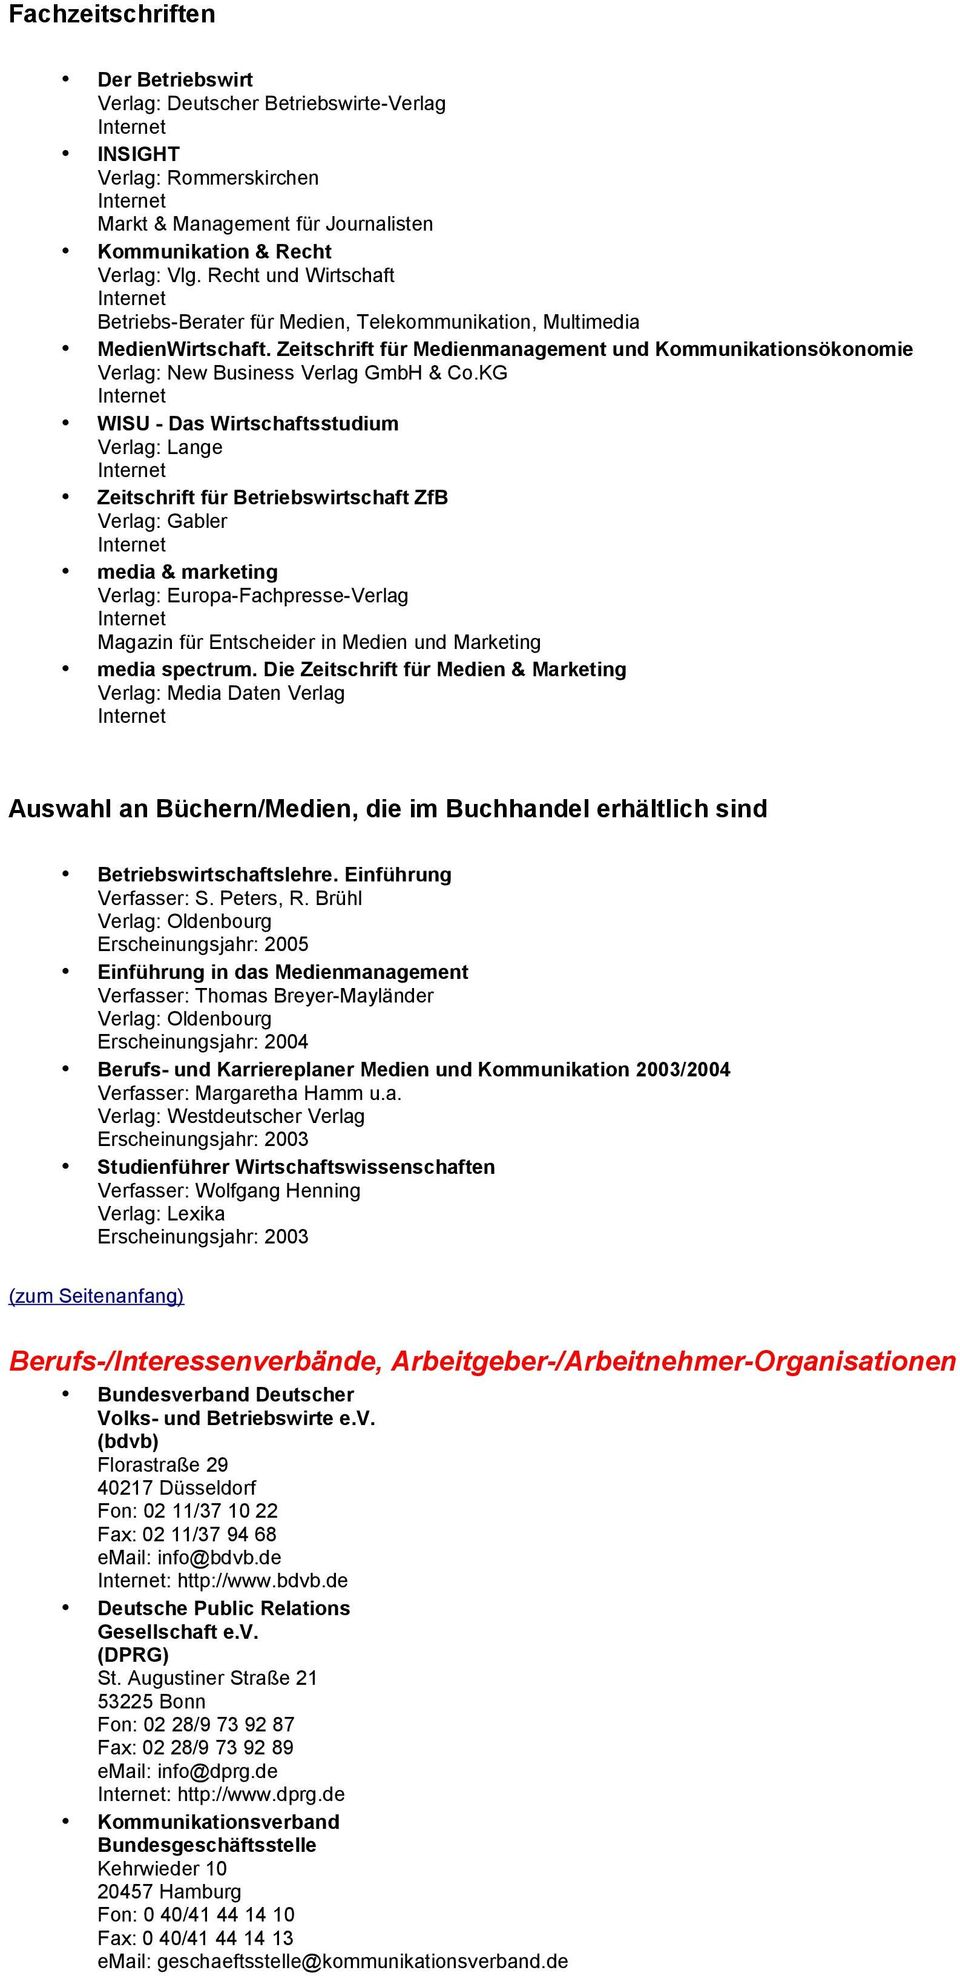 KG WISU - Das Wirtschaftsstudium Verlag: Lange Zeitschrift für Betriebswirtschaft ZfB Verlag: Gabler media & marketing Verlag: Europa-Fachpresse-Verlag Magazin für Entscheider in Medien und Marketing